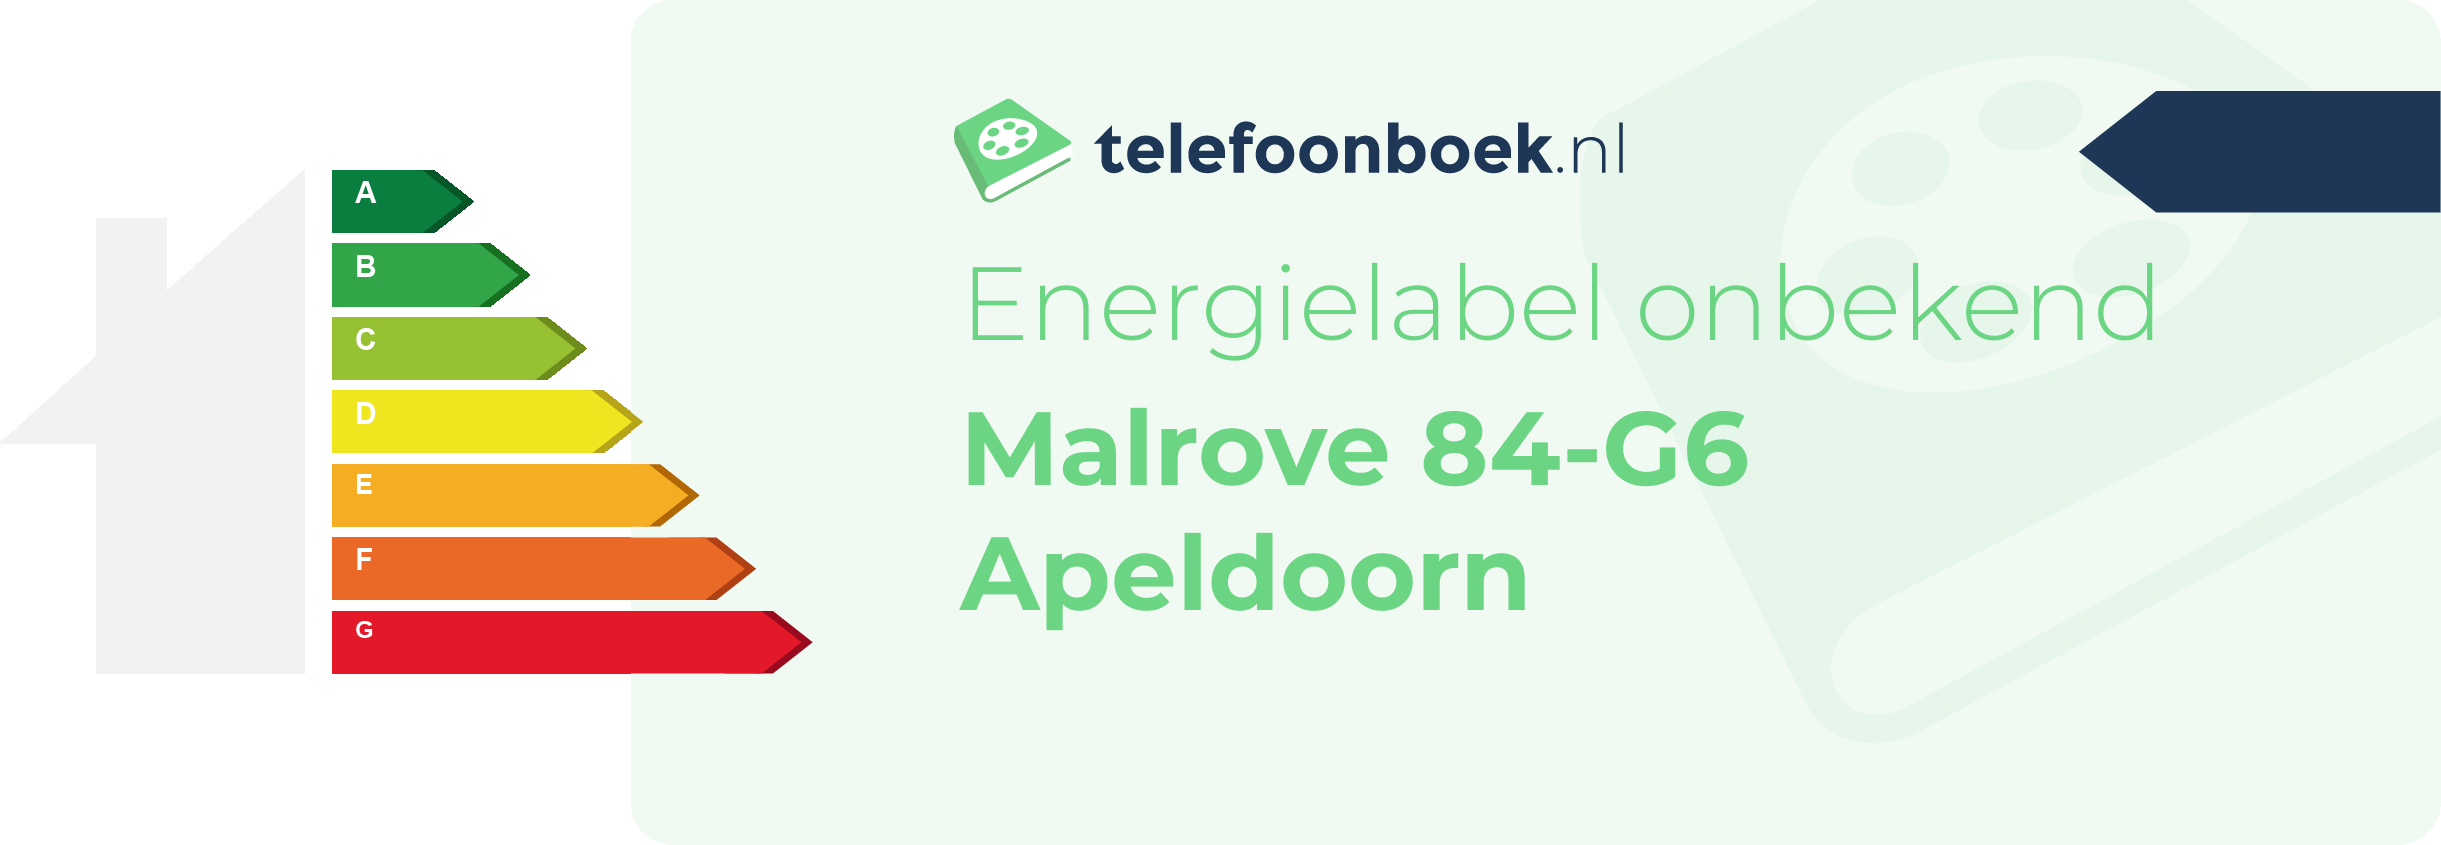 Energielabel Malrove 84-G6 Apeldoorn